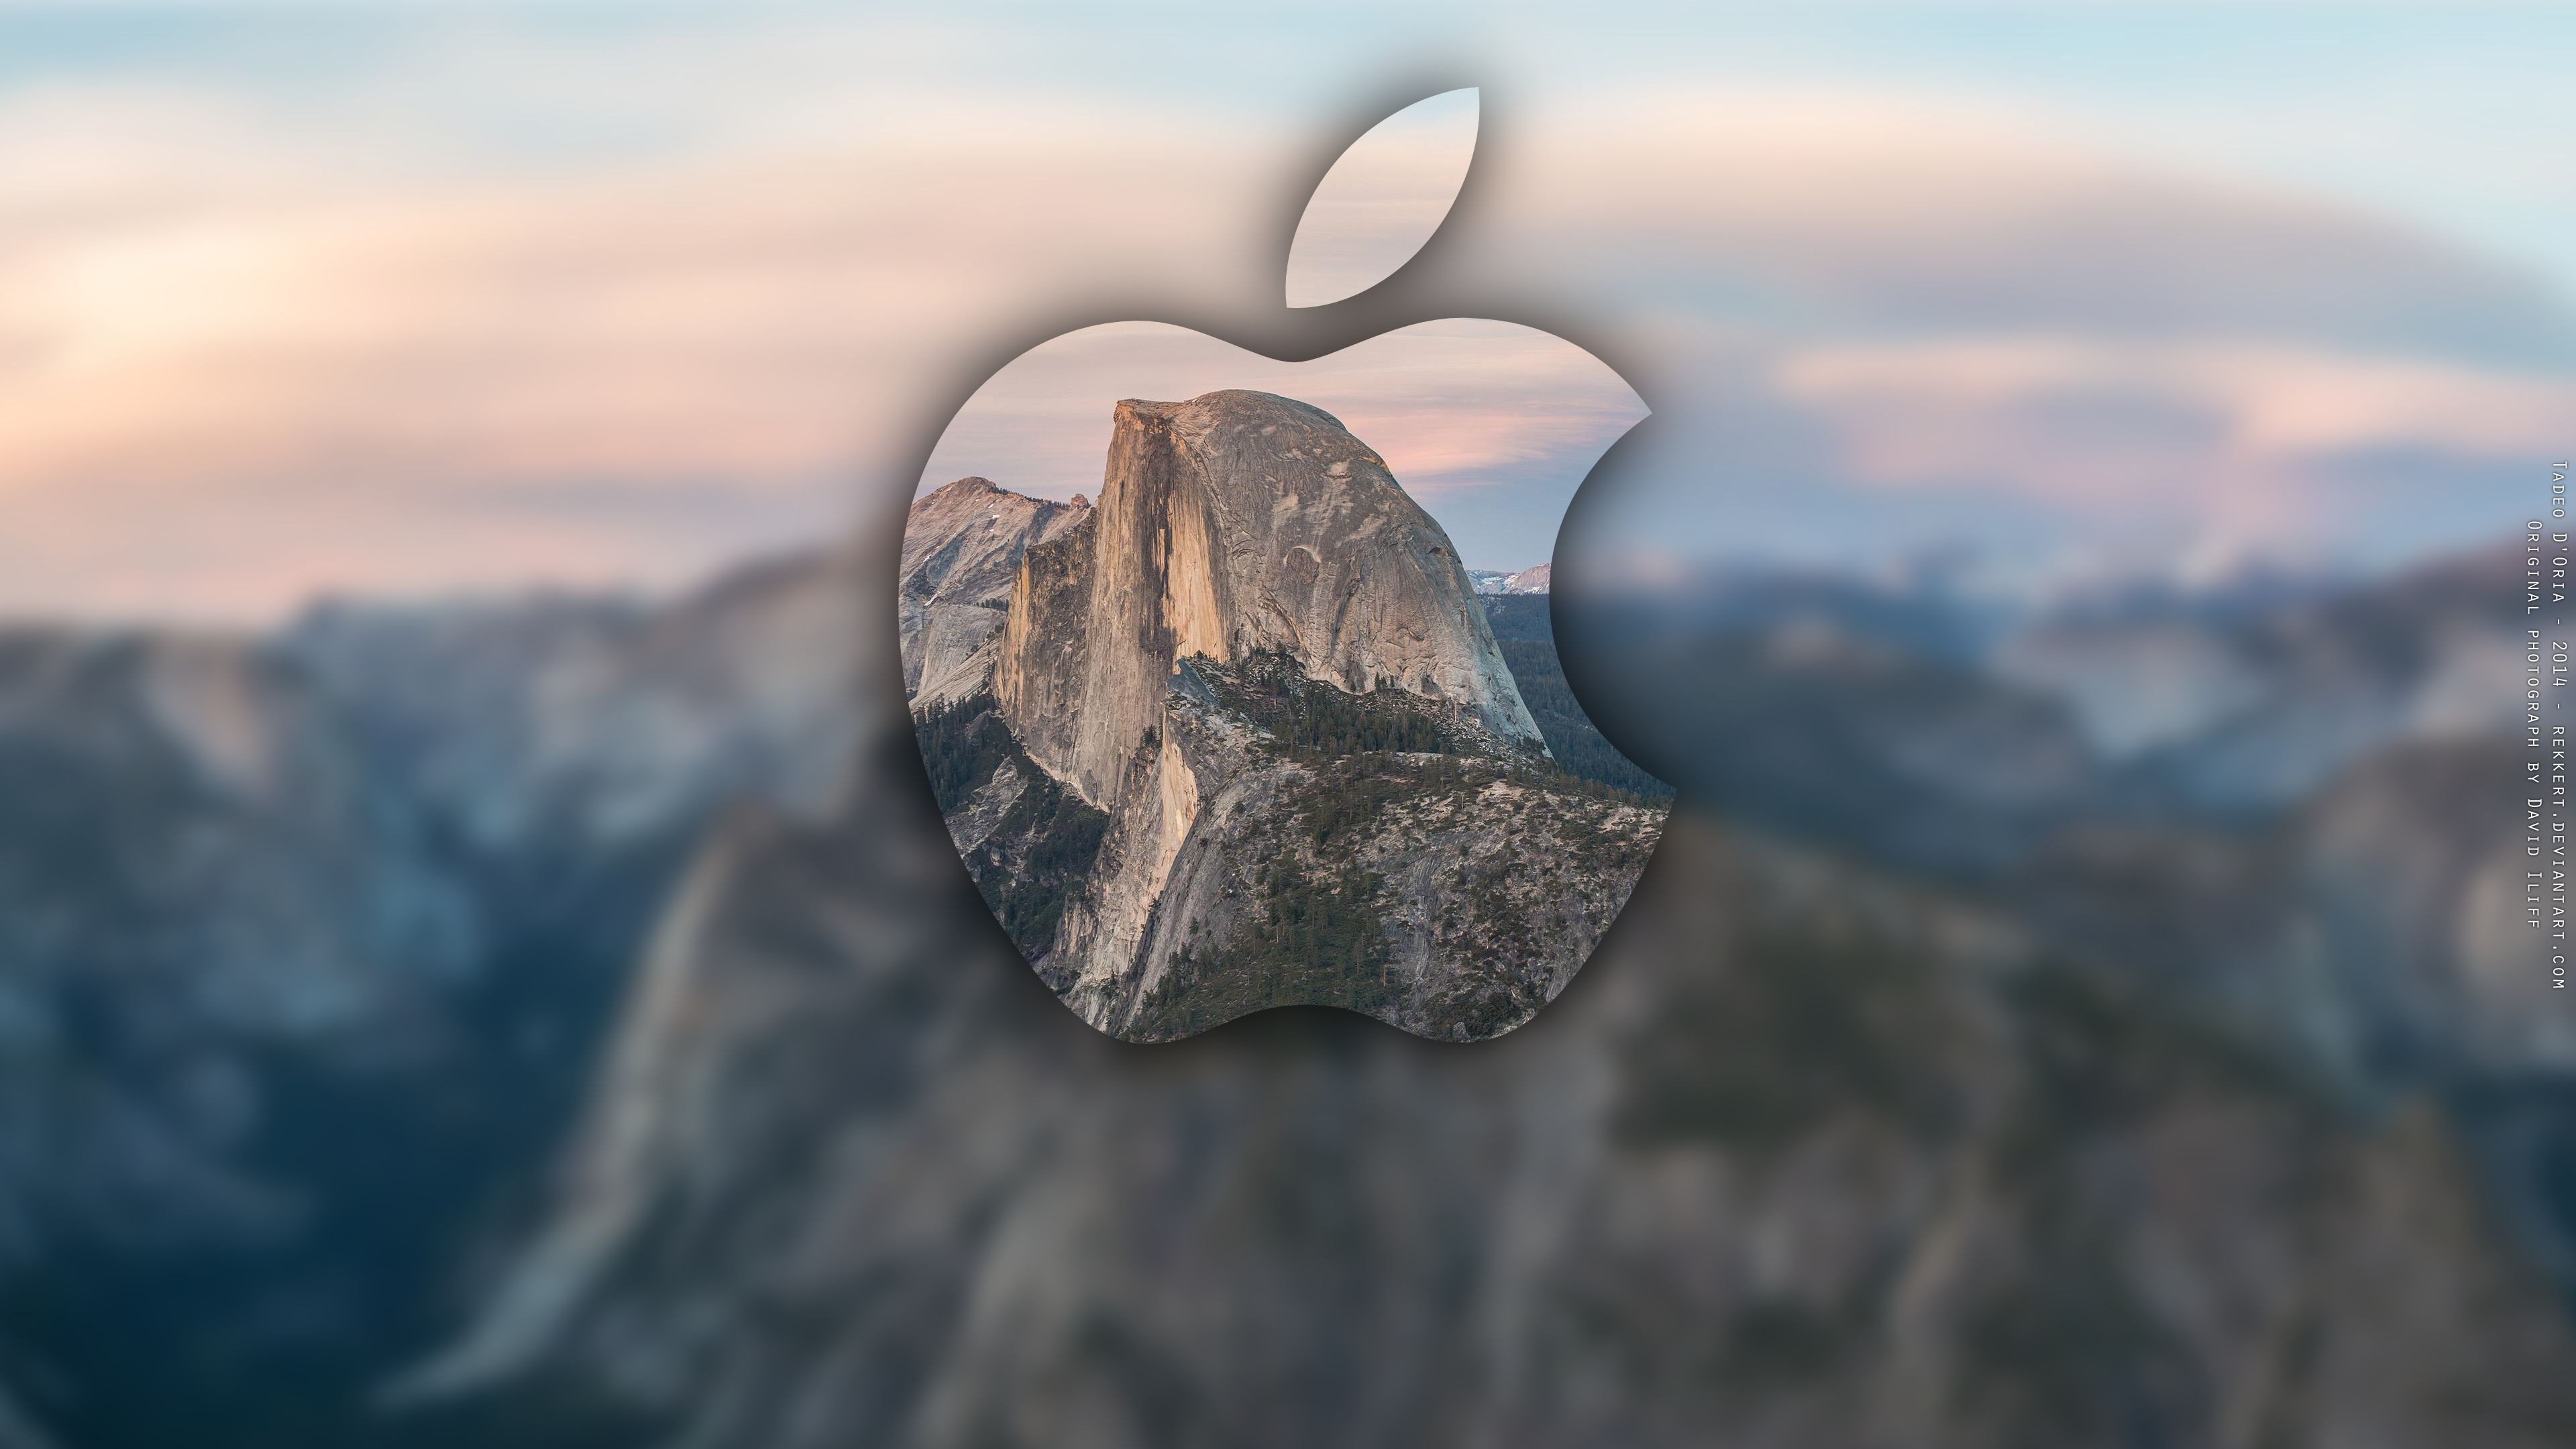 Archive Mac Wallpaper Yosemite For Macs